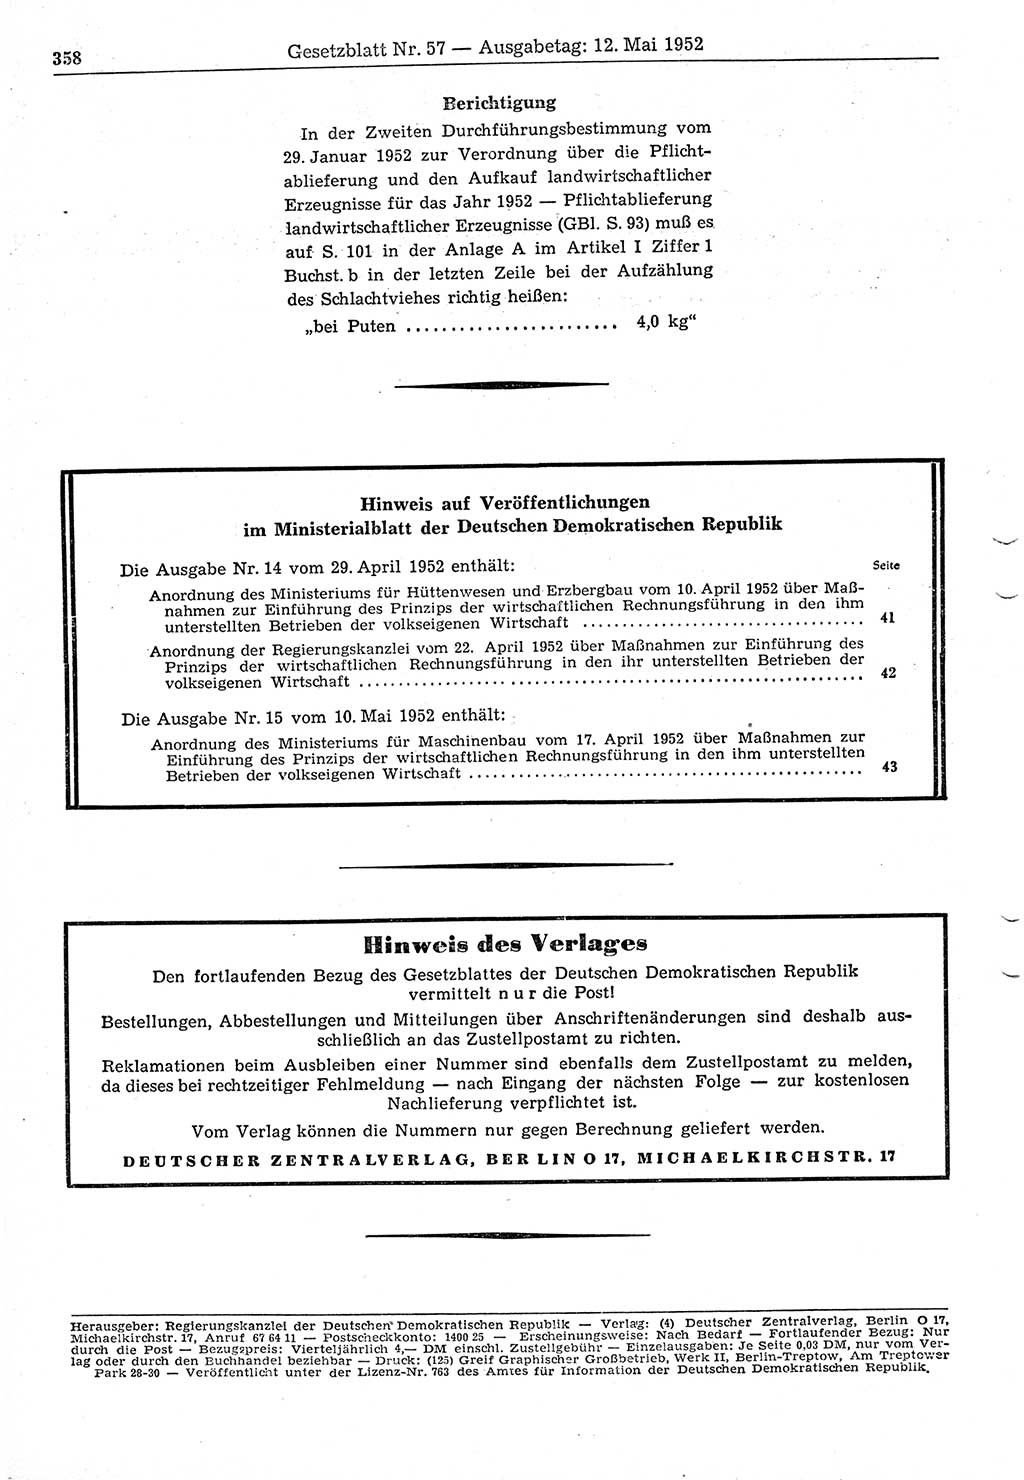 Gesetzblatt (GBl.) der Deutschen Demokratischen Republik (DDR) 1952, Seite 358 (GBl. DDR 1952, S. 358)